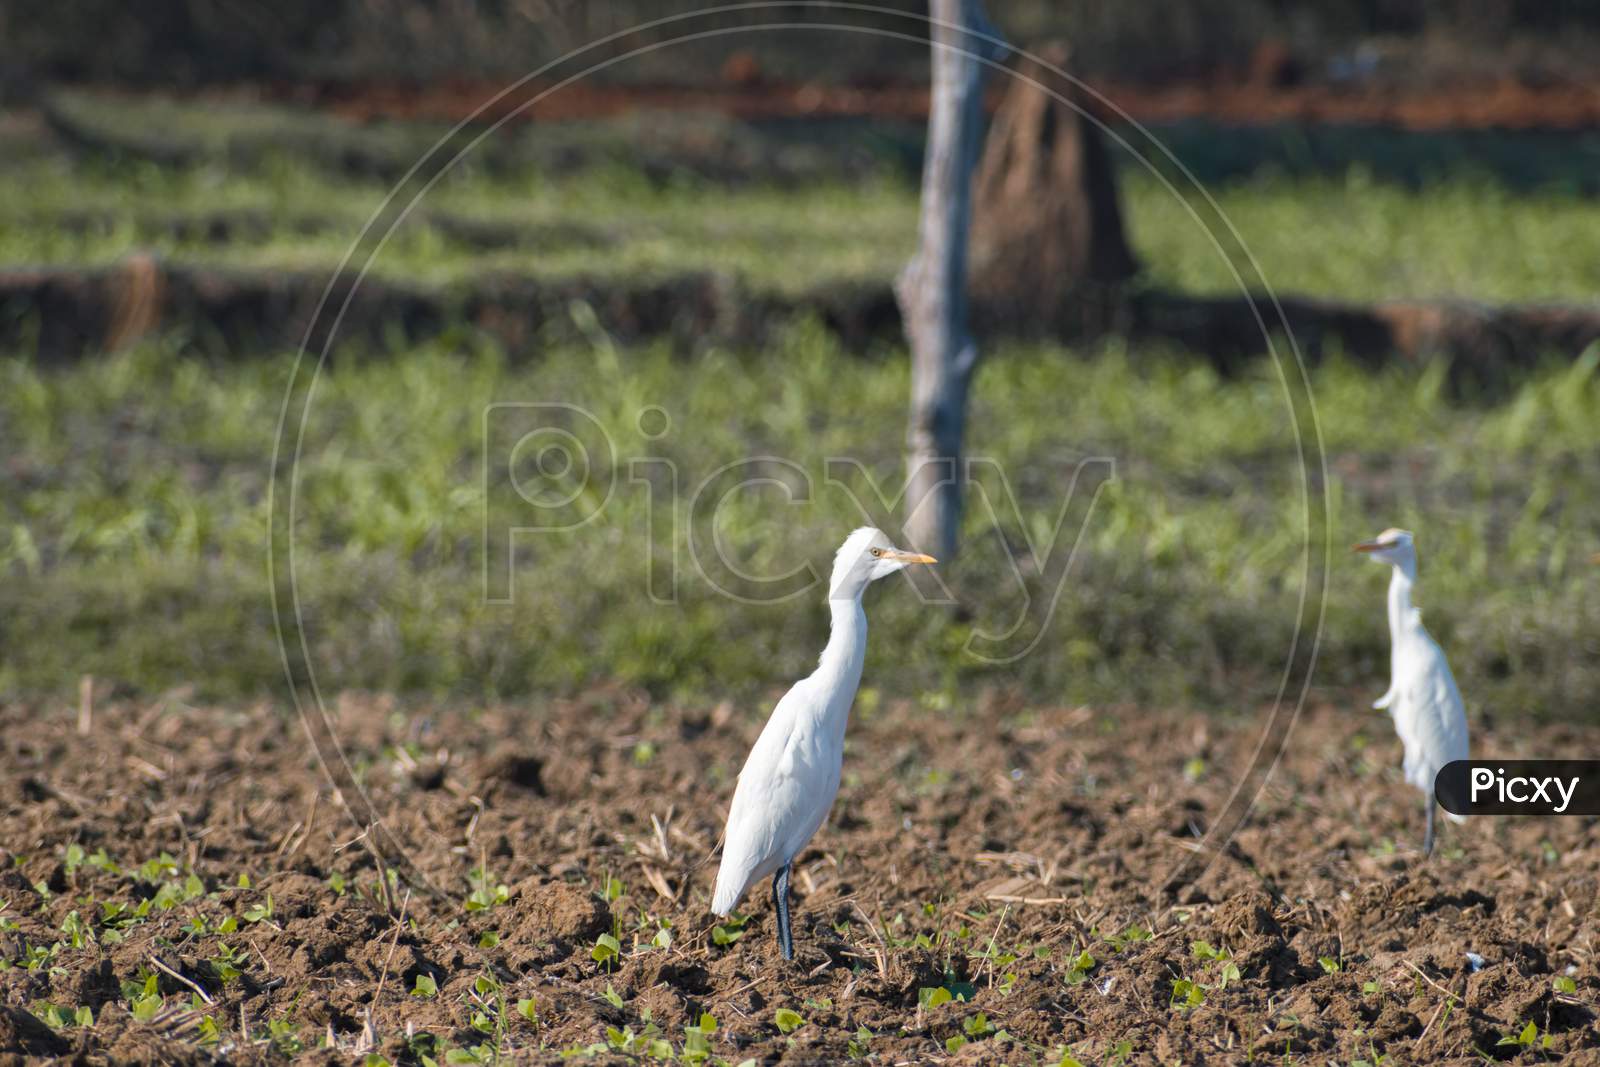 Cattle Egret Bird Walking Alone On The Field.